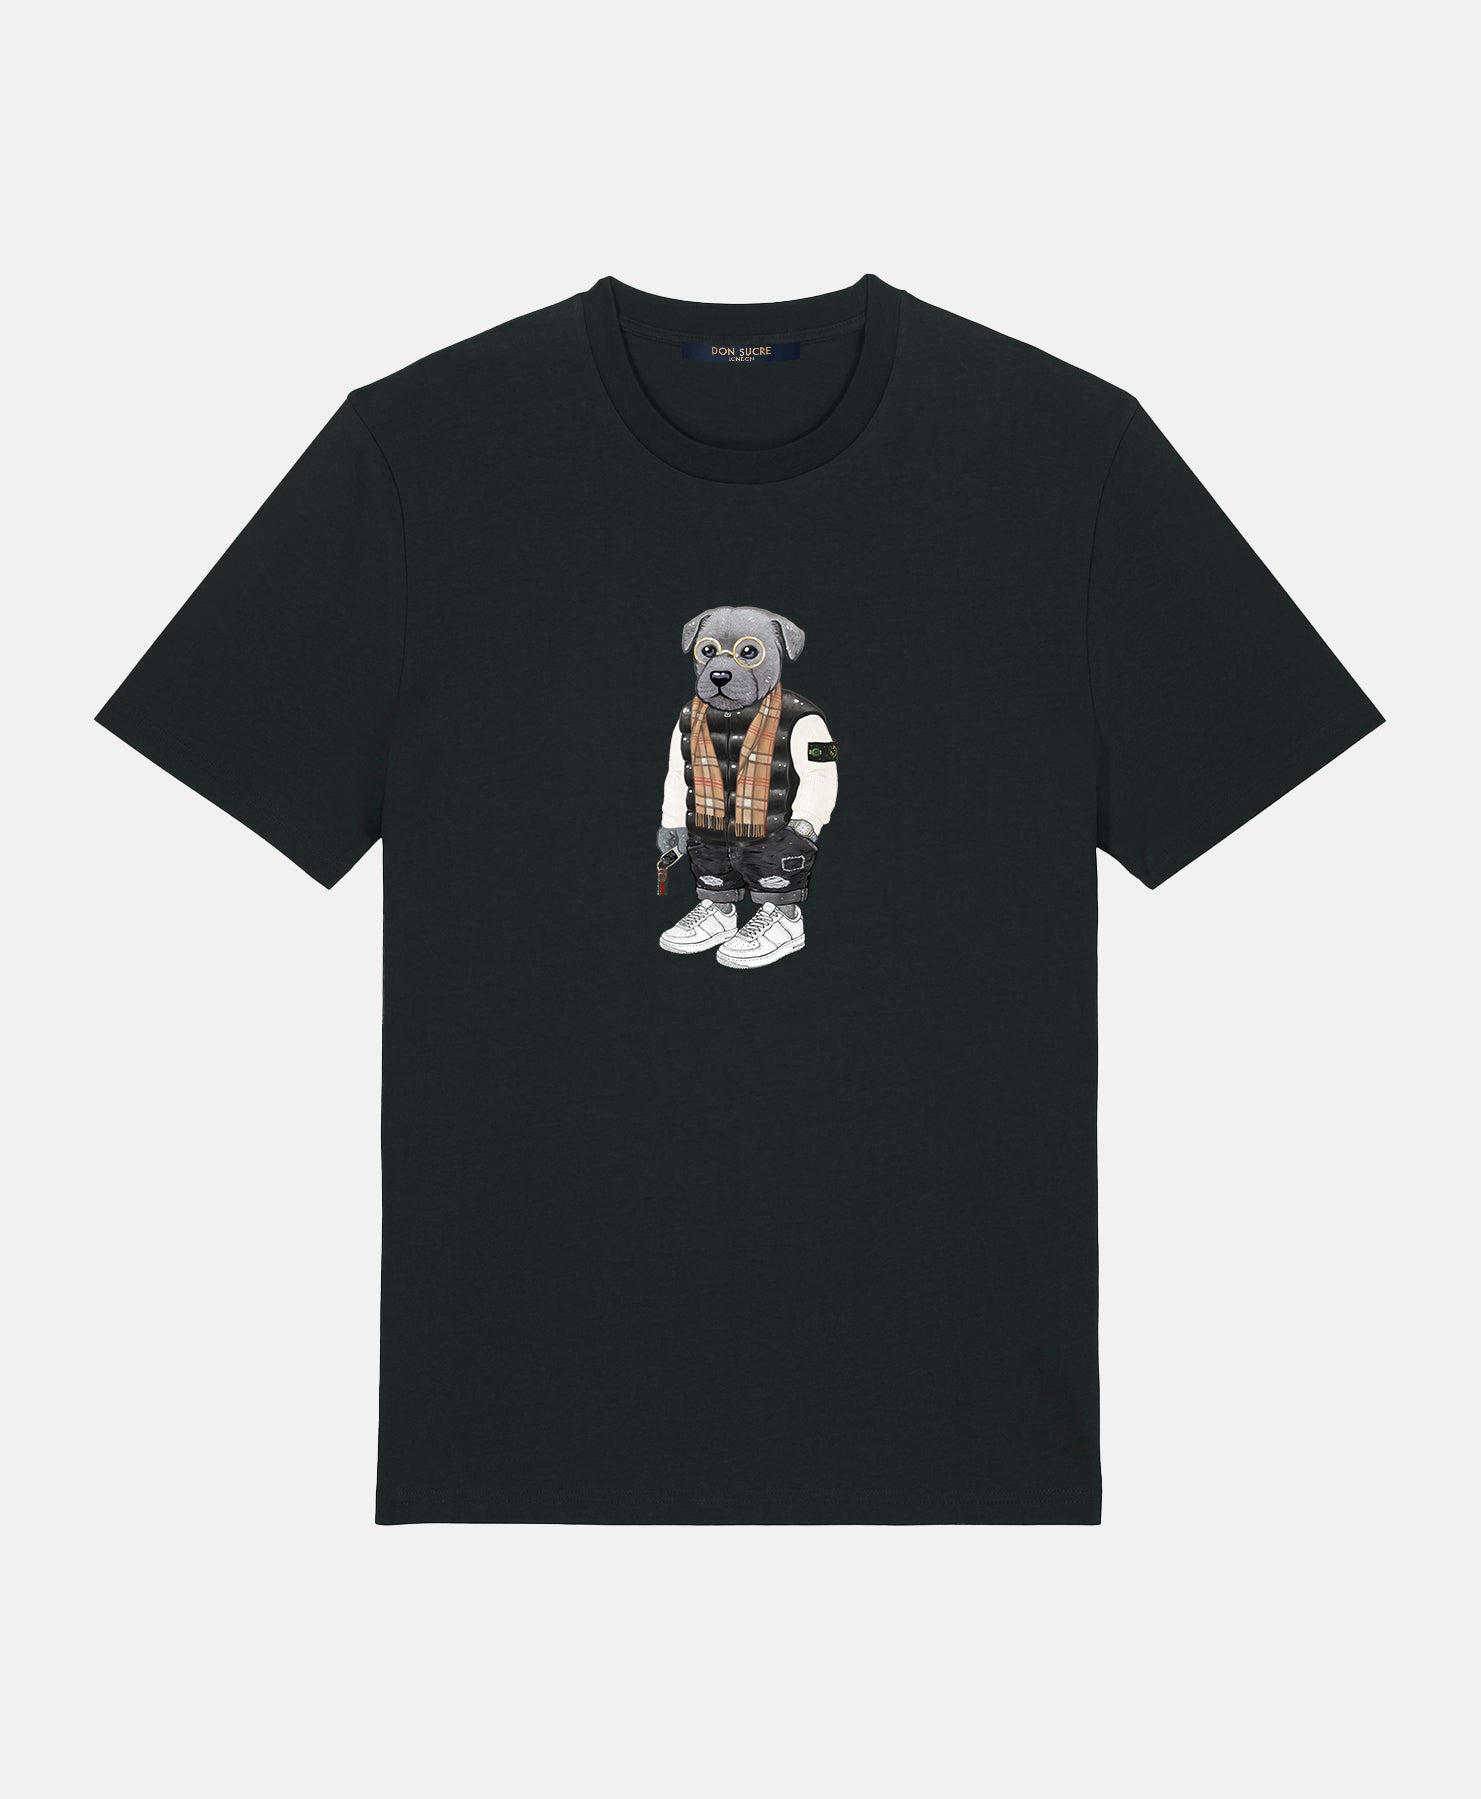 Staffordshire Bull Terrier T-Shirt Black